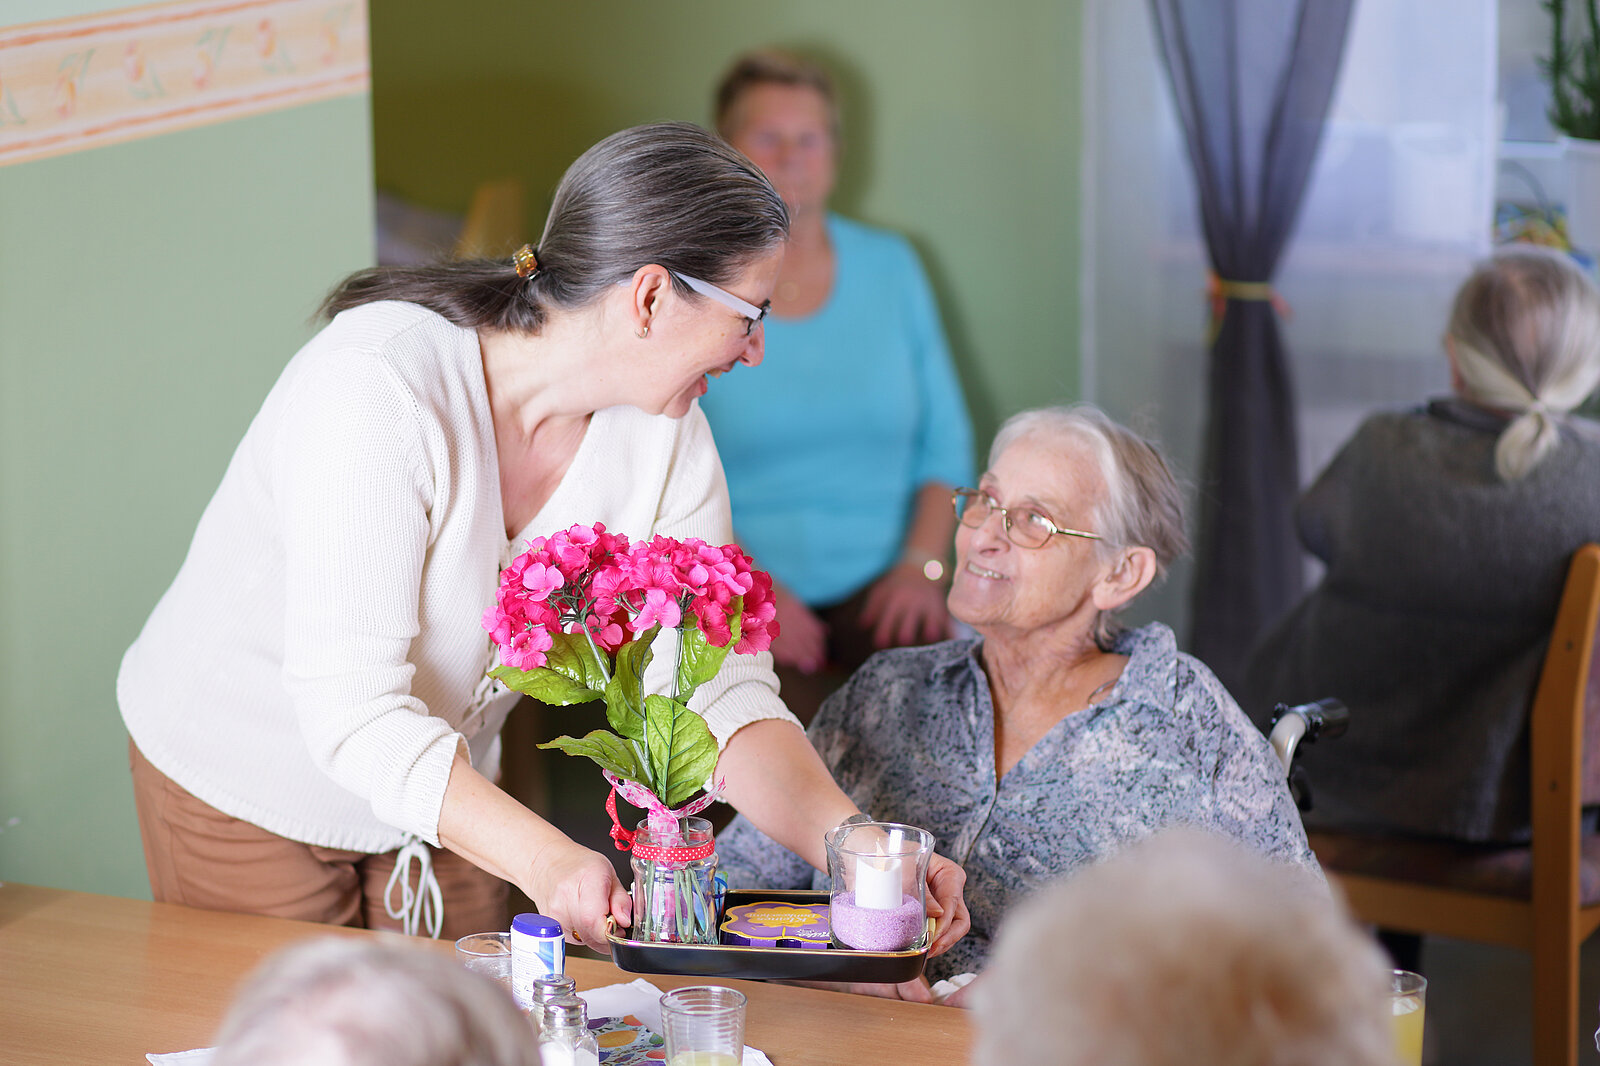 Eine Mitarbeiterin reicht einer Bewohnerin ein Tablett mit einer Tasse und Blumen darauf